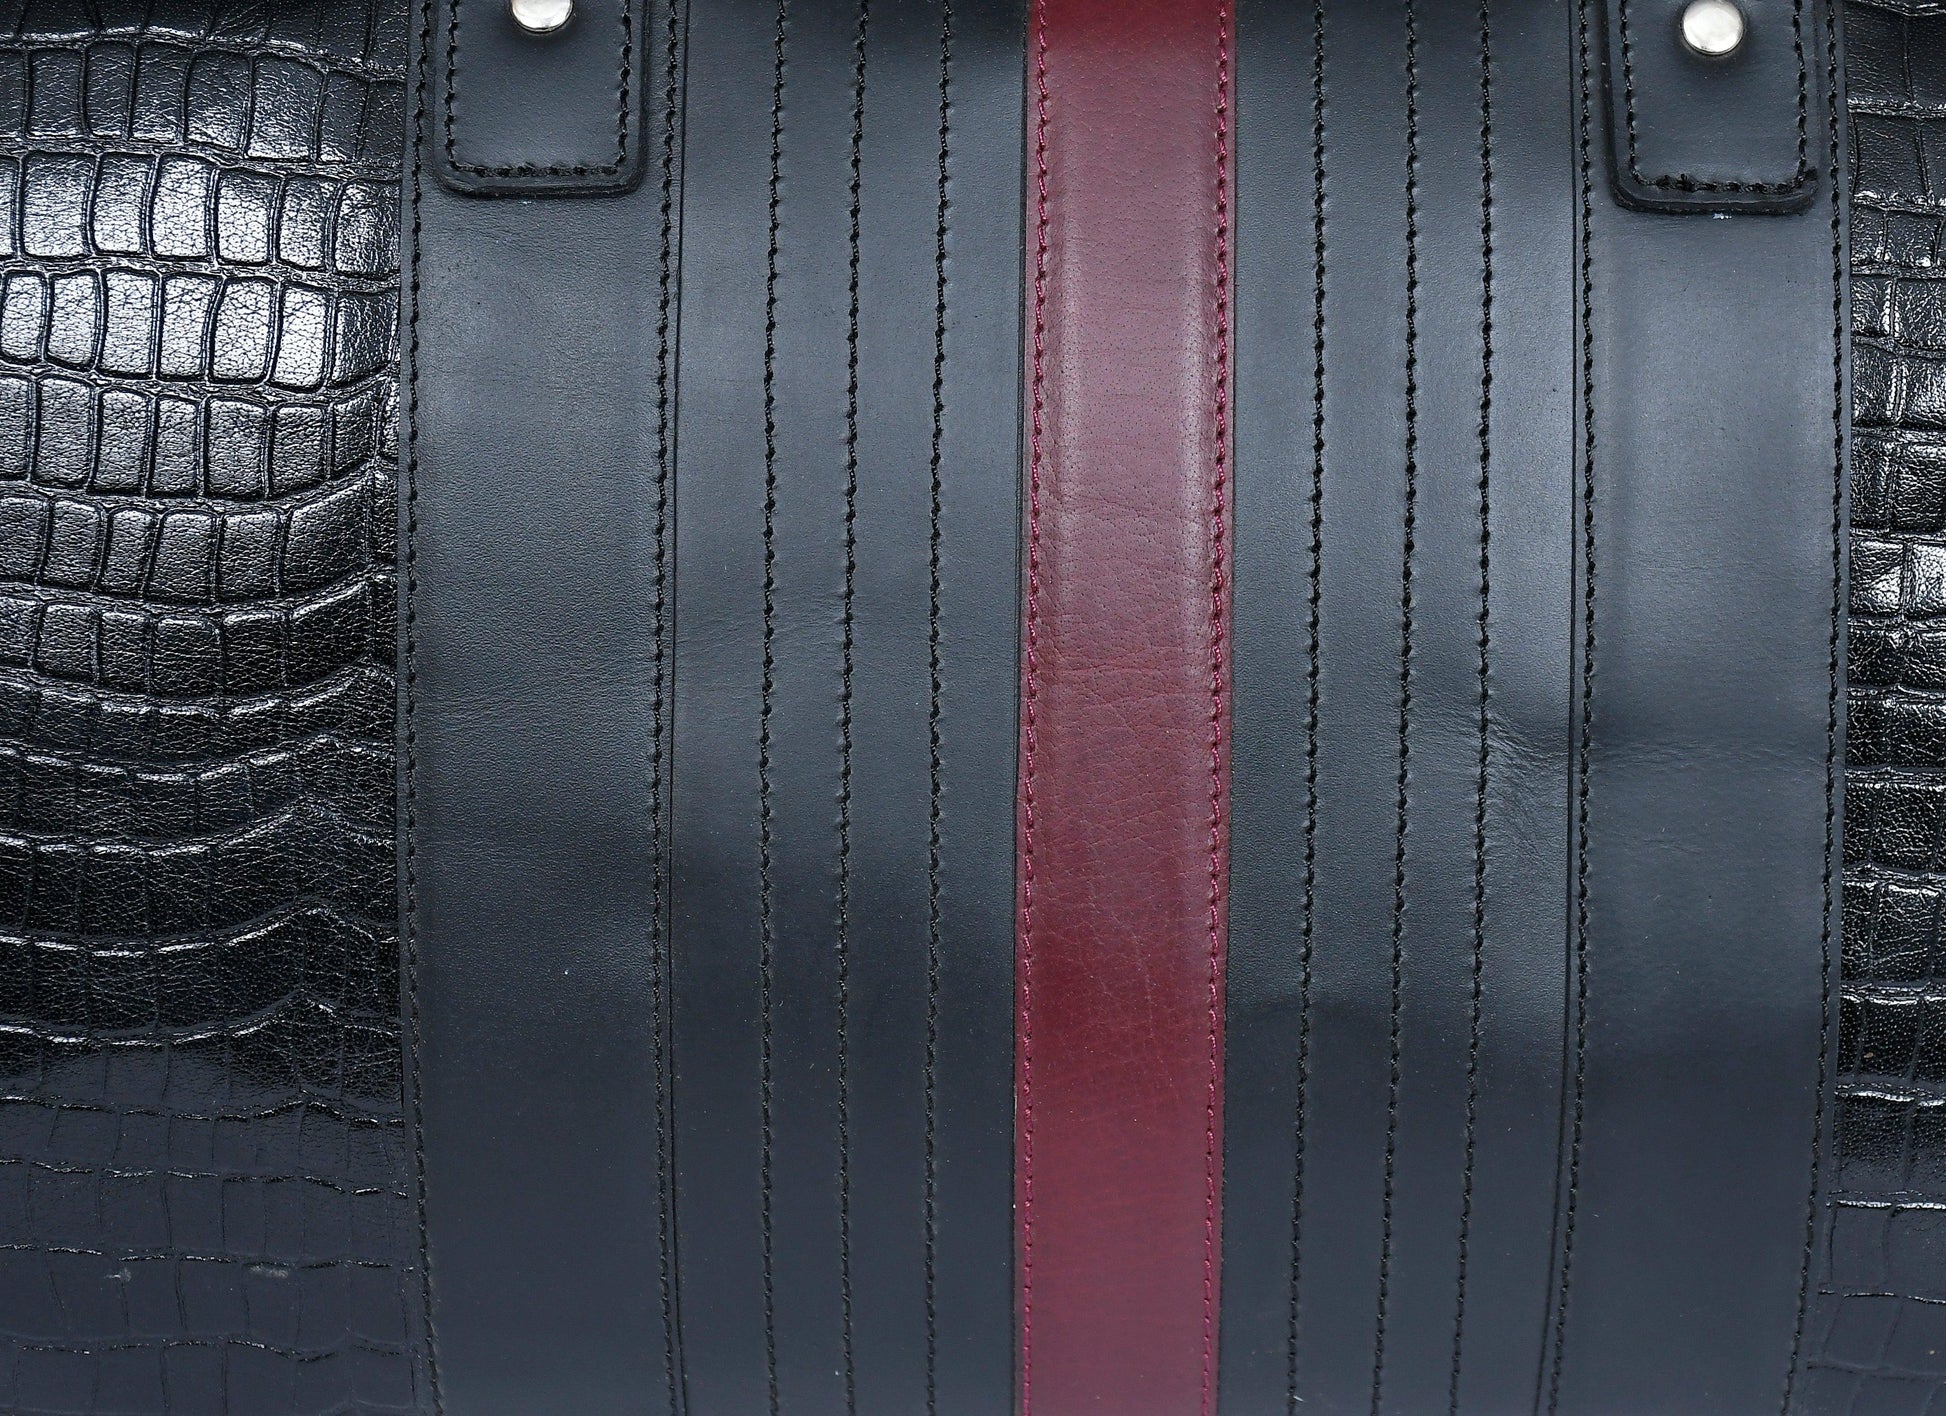 Celtic Black Color Pure Leather Duffel Bag for Travelling | Handmade Weekender Bag. - CELTICINDIA